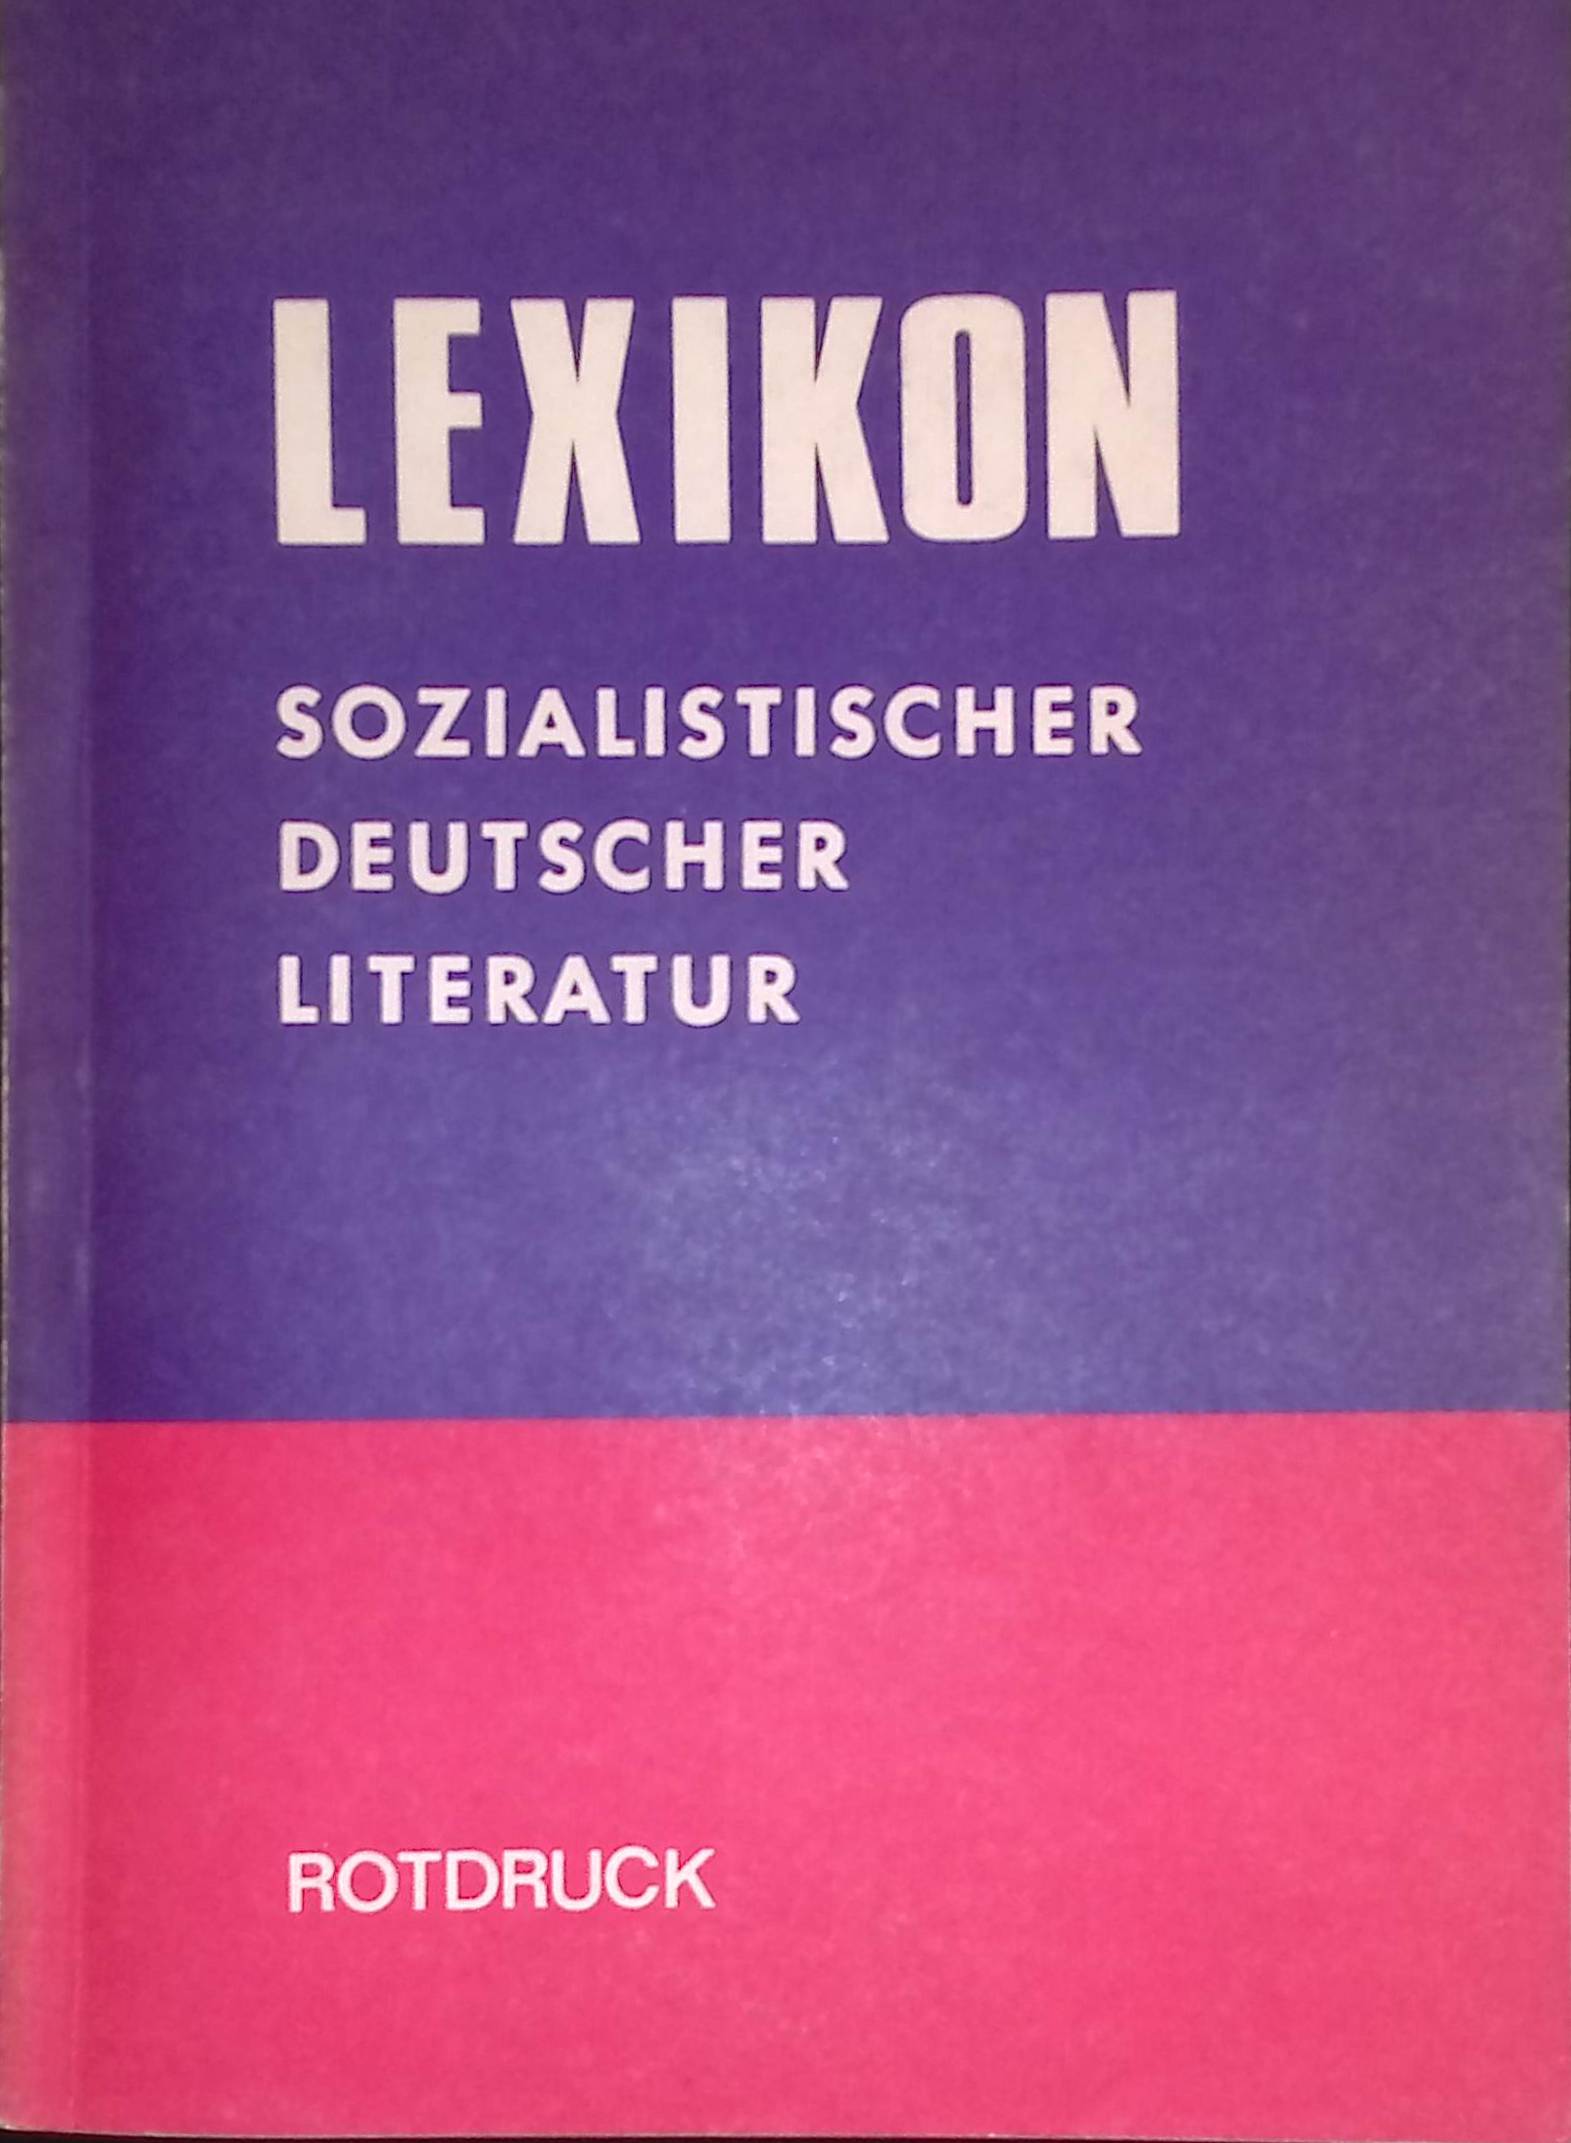 Lexikon sozialistischer deutscher Literatur von den Anfängen bis 1945 Monographisch-Biographische Darstellungen. - Adling, Wilfried, Fritz Albrecht Günter Albrecht u. a.